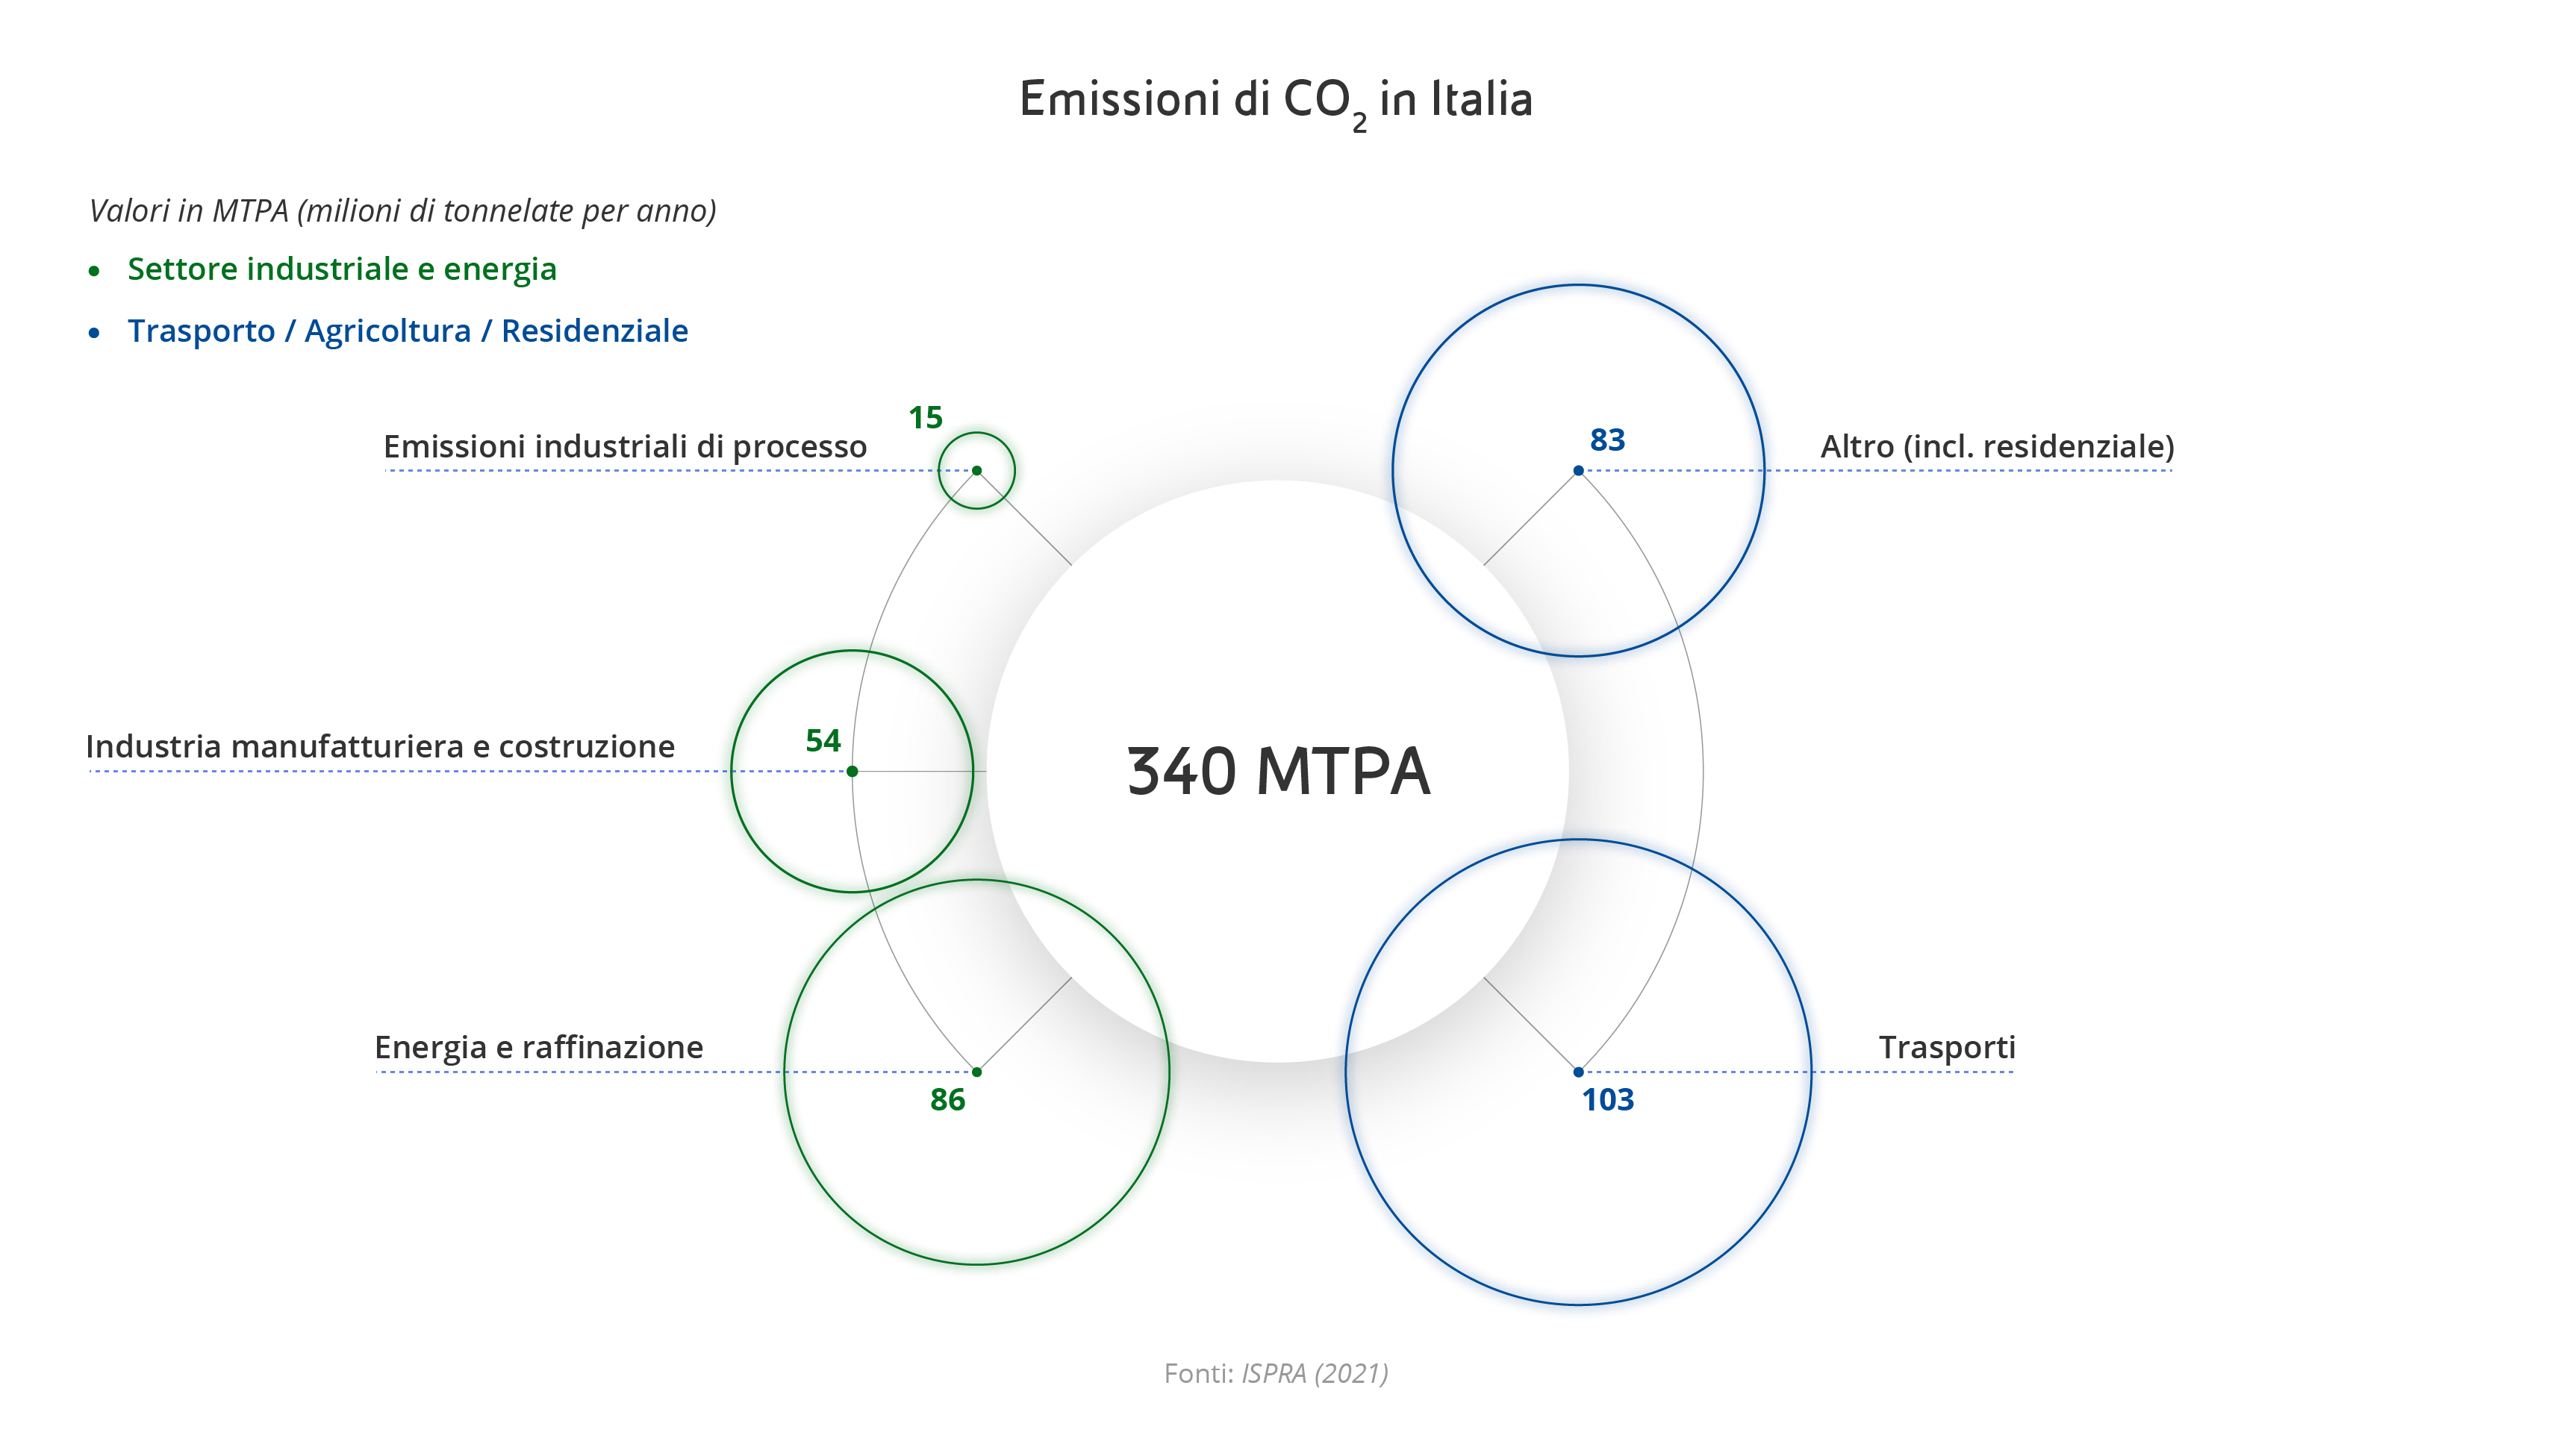 ccs-strategia-decarbonizzazione-infografica1.jpg